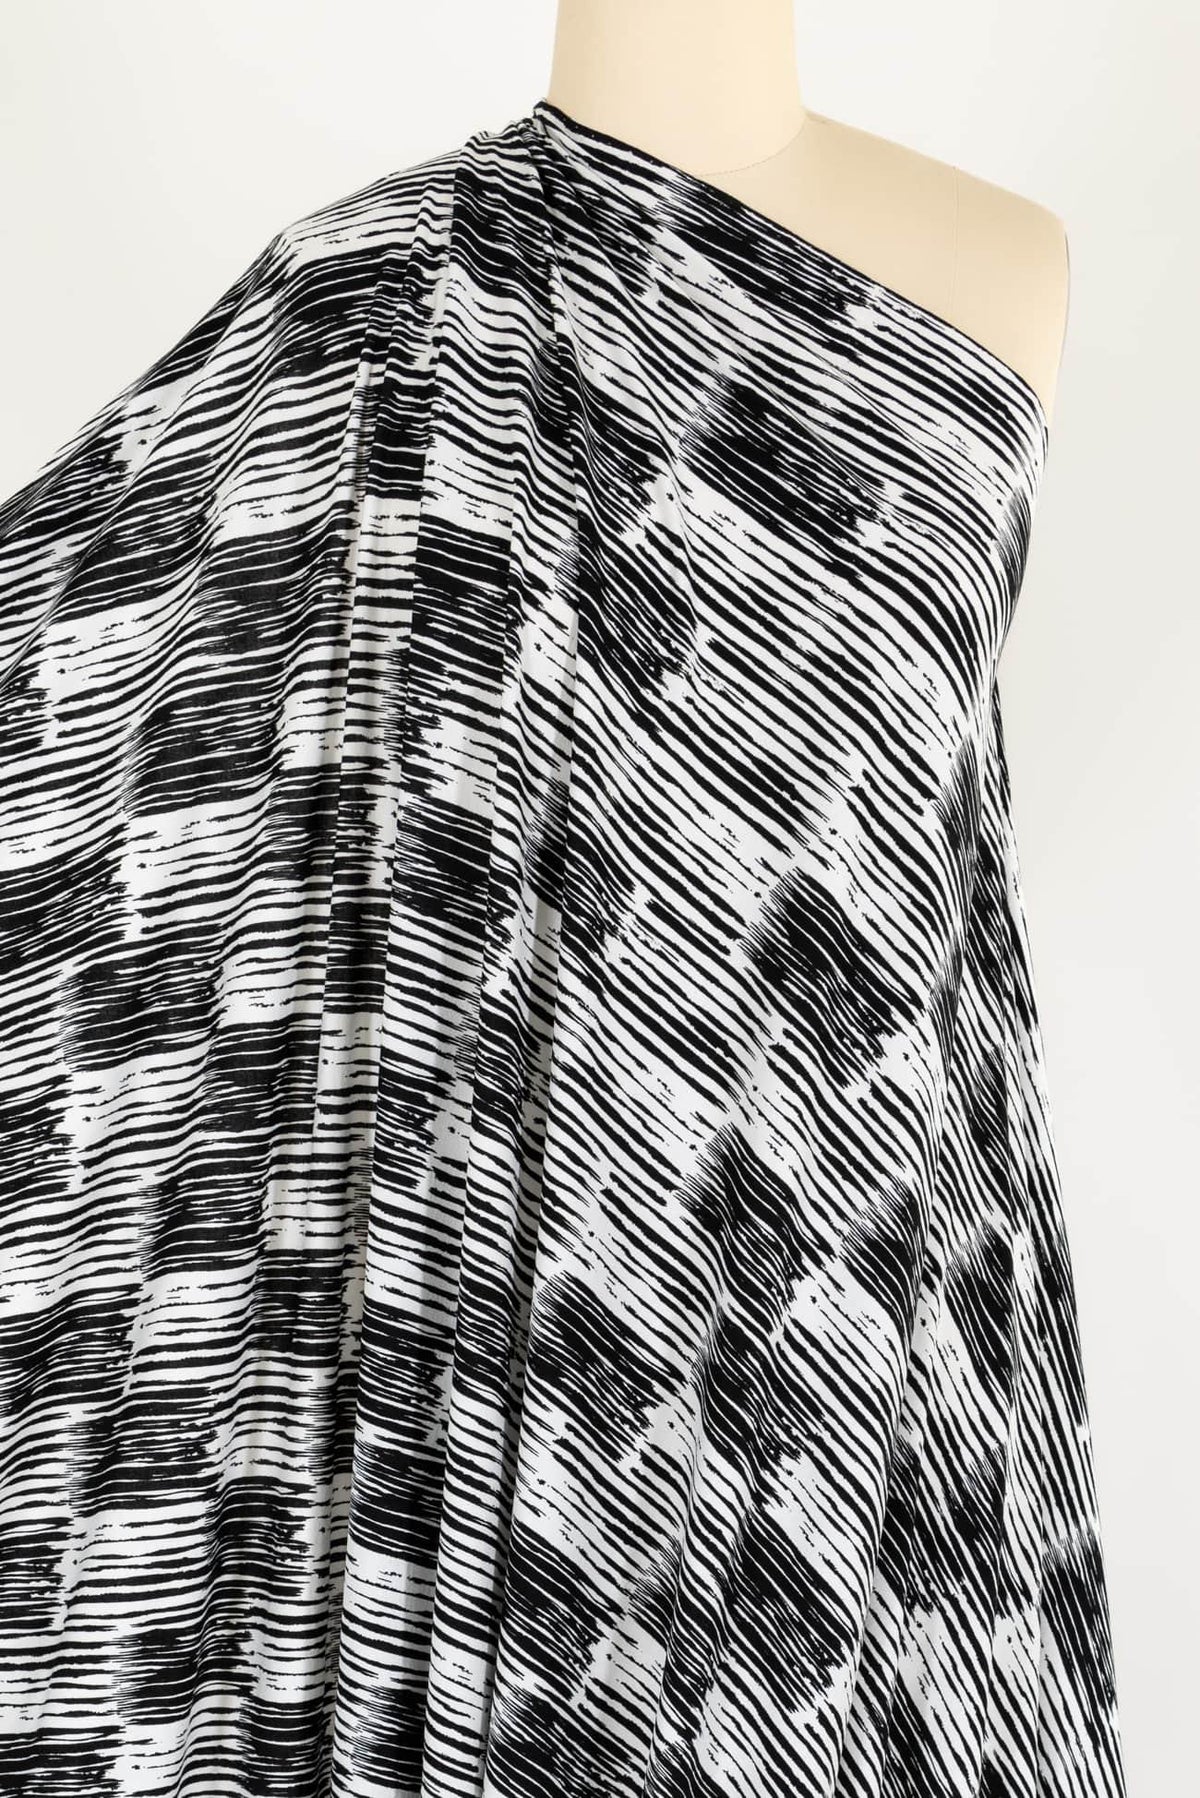 Hera Viscose Knit - Marcy Tilton Fabrics